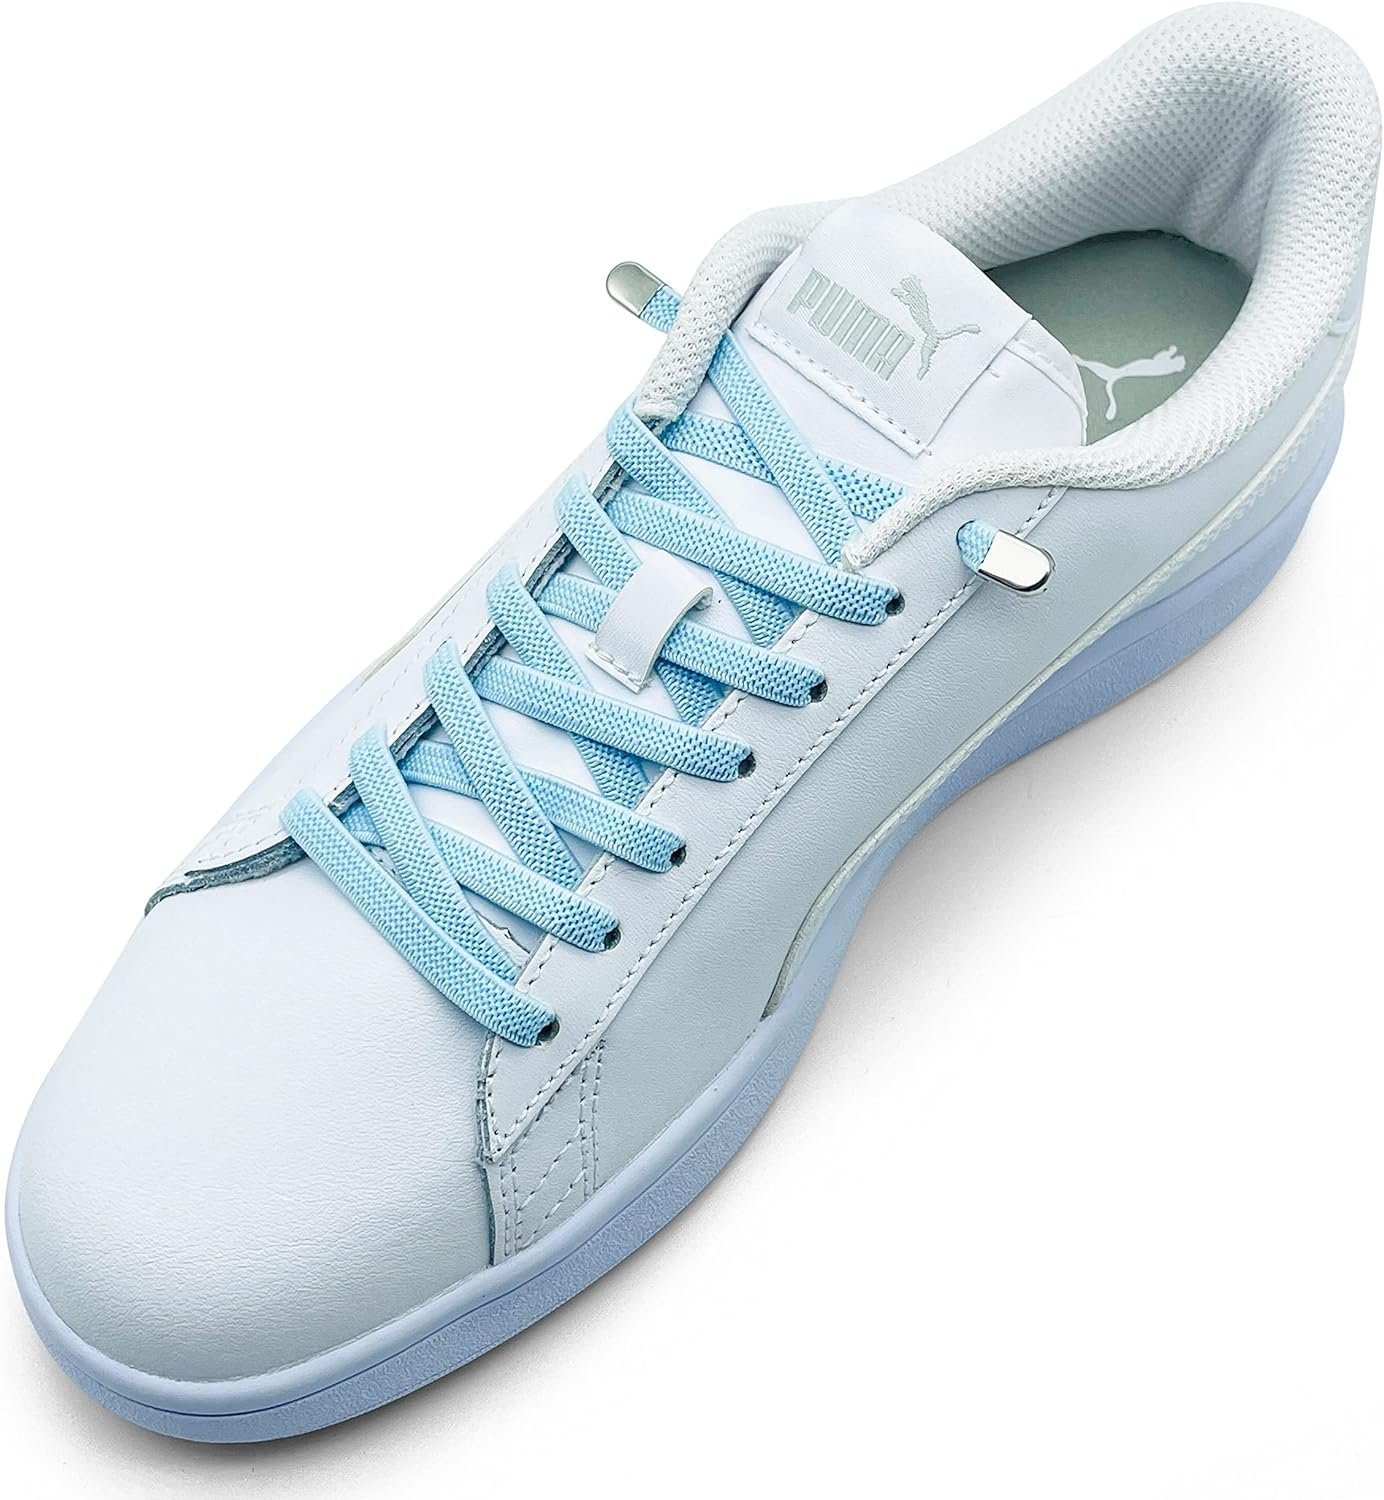 ELANOX Schnürsenkel 4 Stück für 2 Paar Schuhe elastische Schnürsenkel mit Clips, inkl. Enden (Clips) - 8 St. in silber hellblau